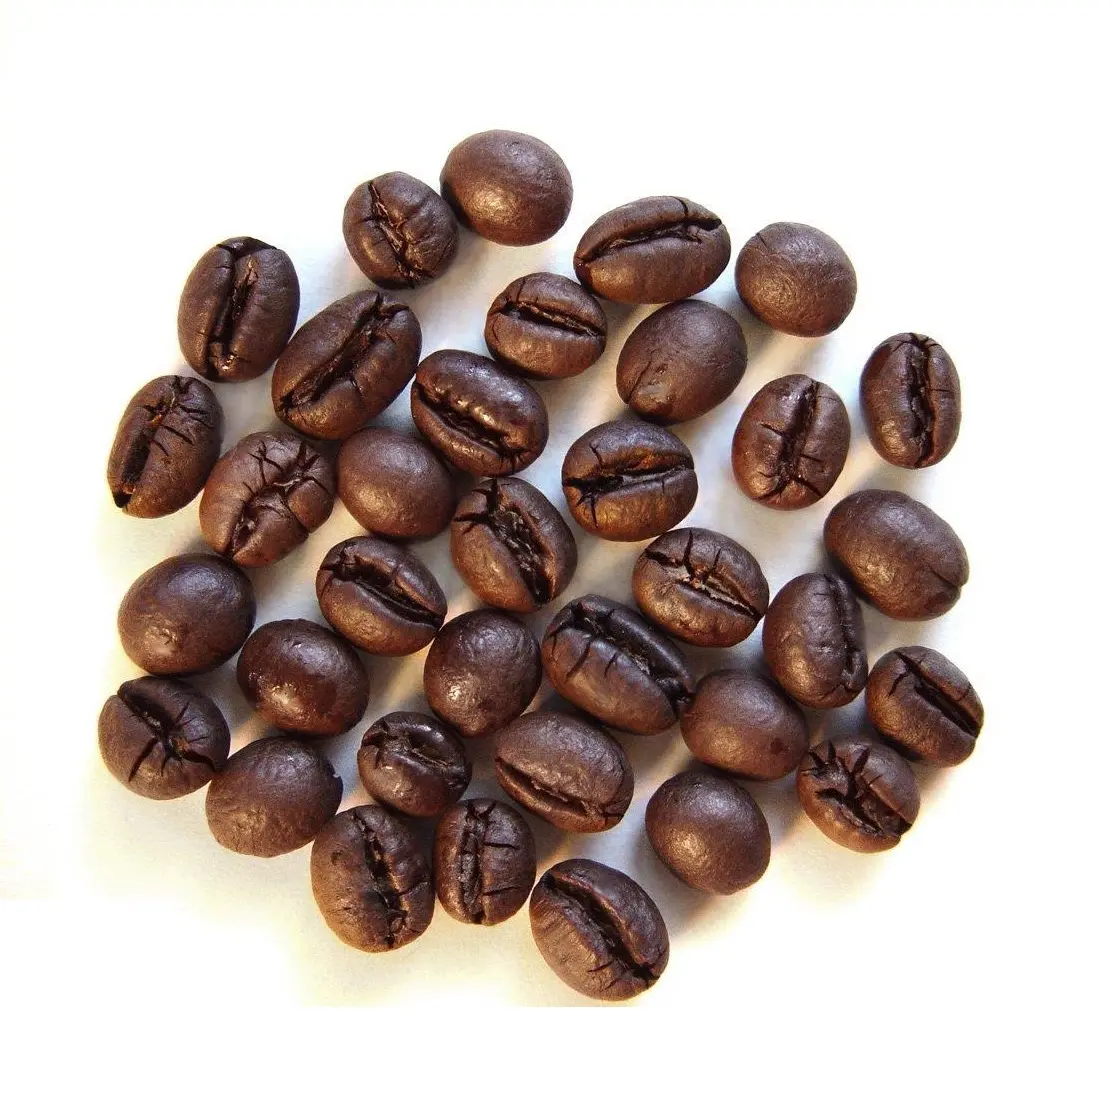 Вьетнамский кофе лучшего качества по конкурентоспособной цене 100% робуста жареный кофе жареные зерна кофе премиум-класса-WHATSAP 0084989322607